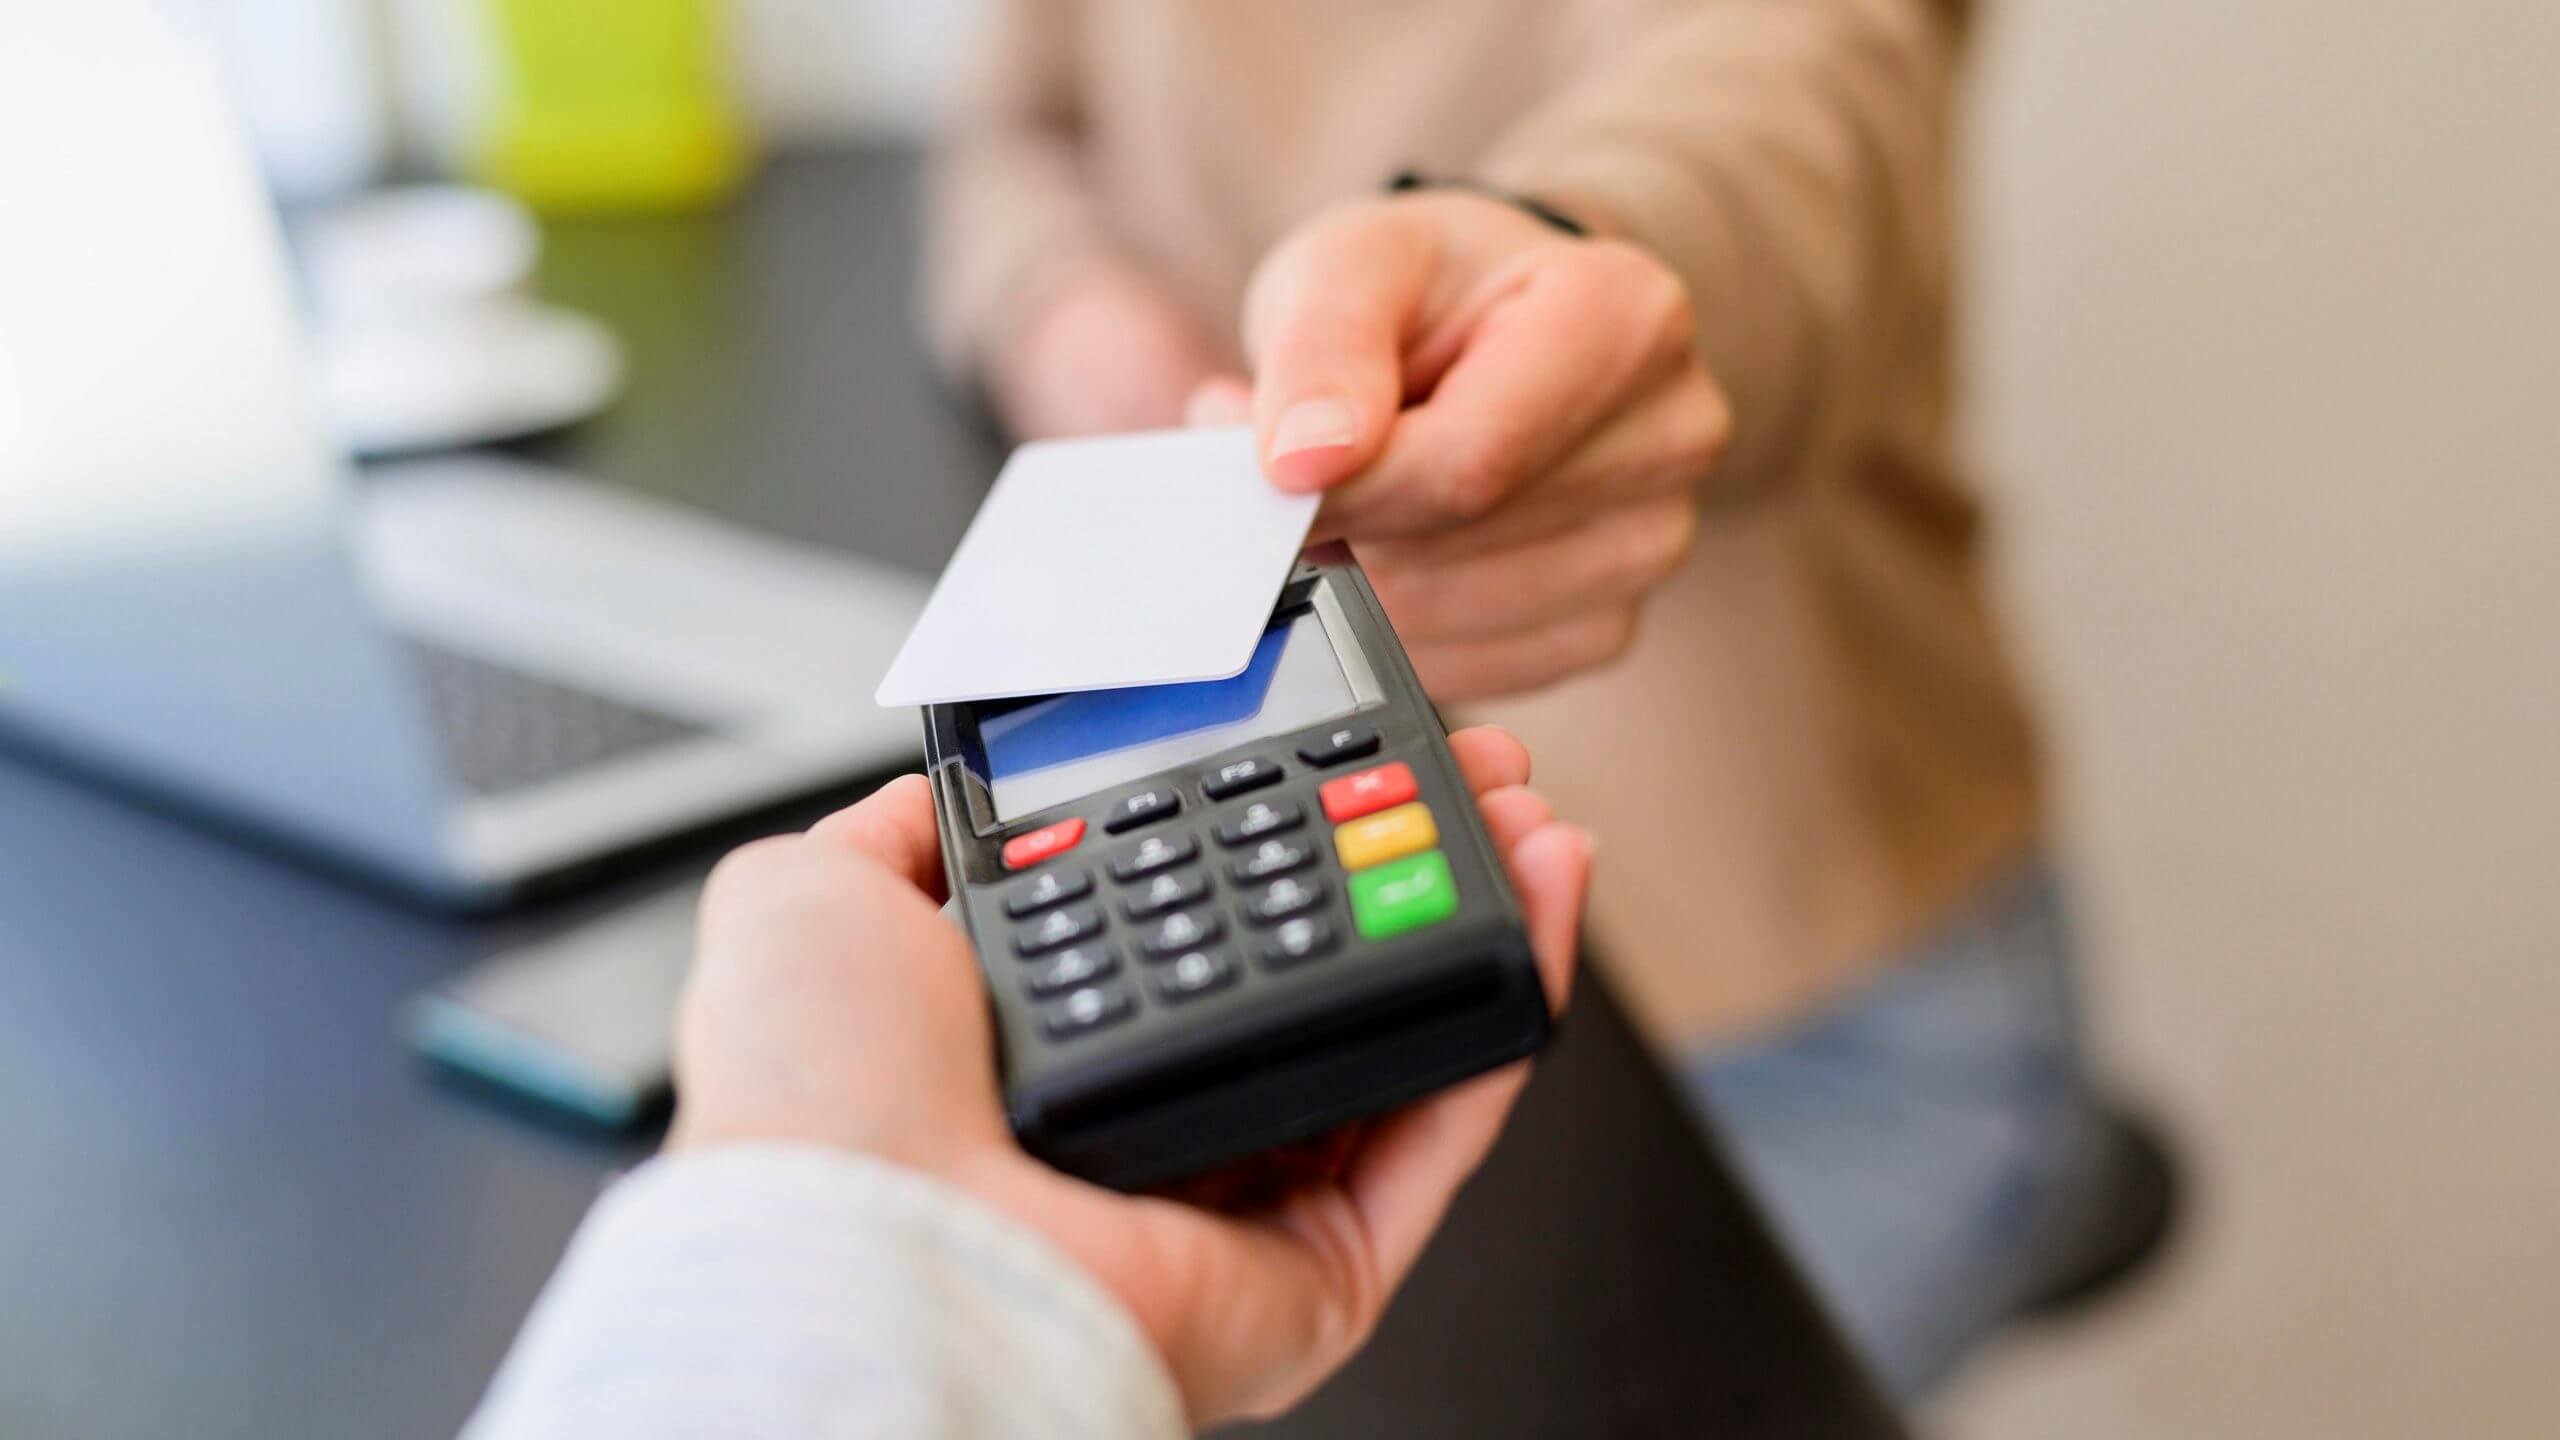 Chọn dịch vụ quẹt thẻ tín dụng lấy tiền mặt cần lưu ý điều gì?